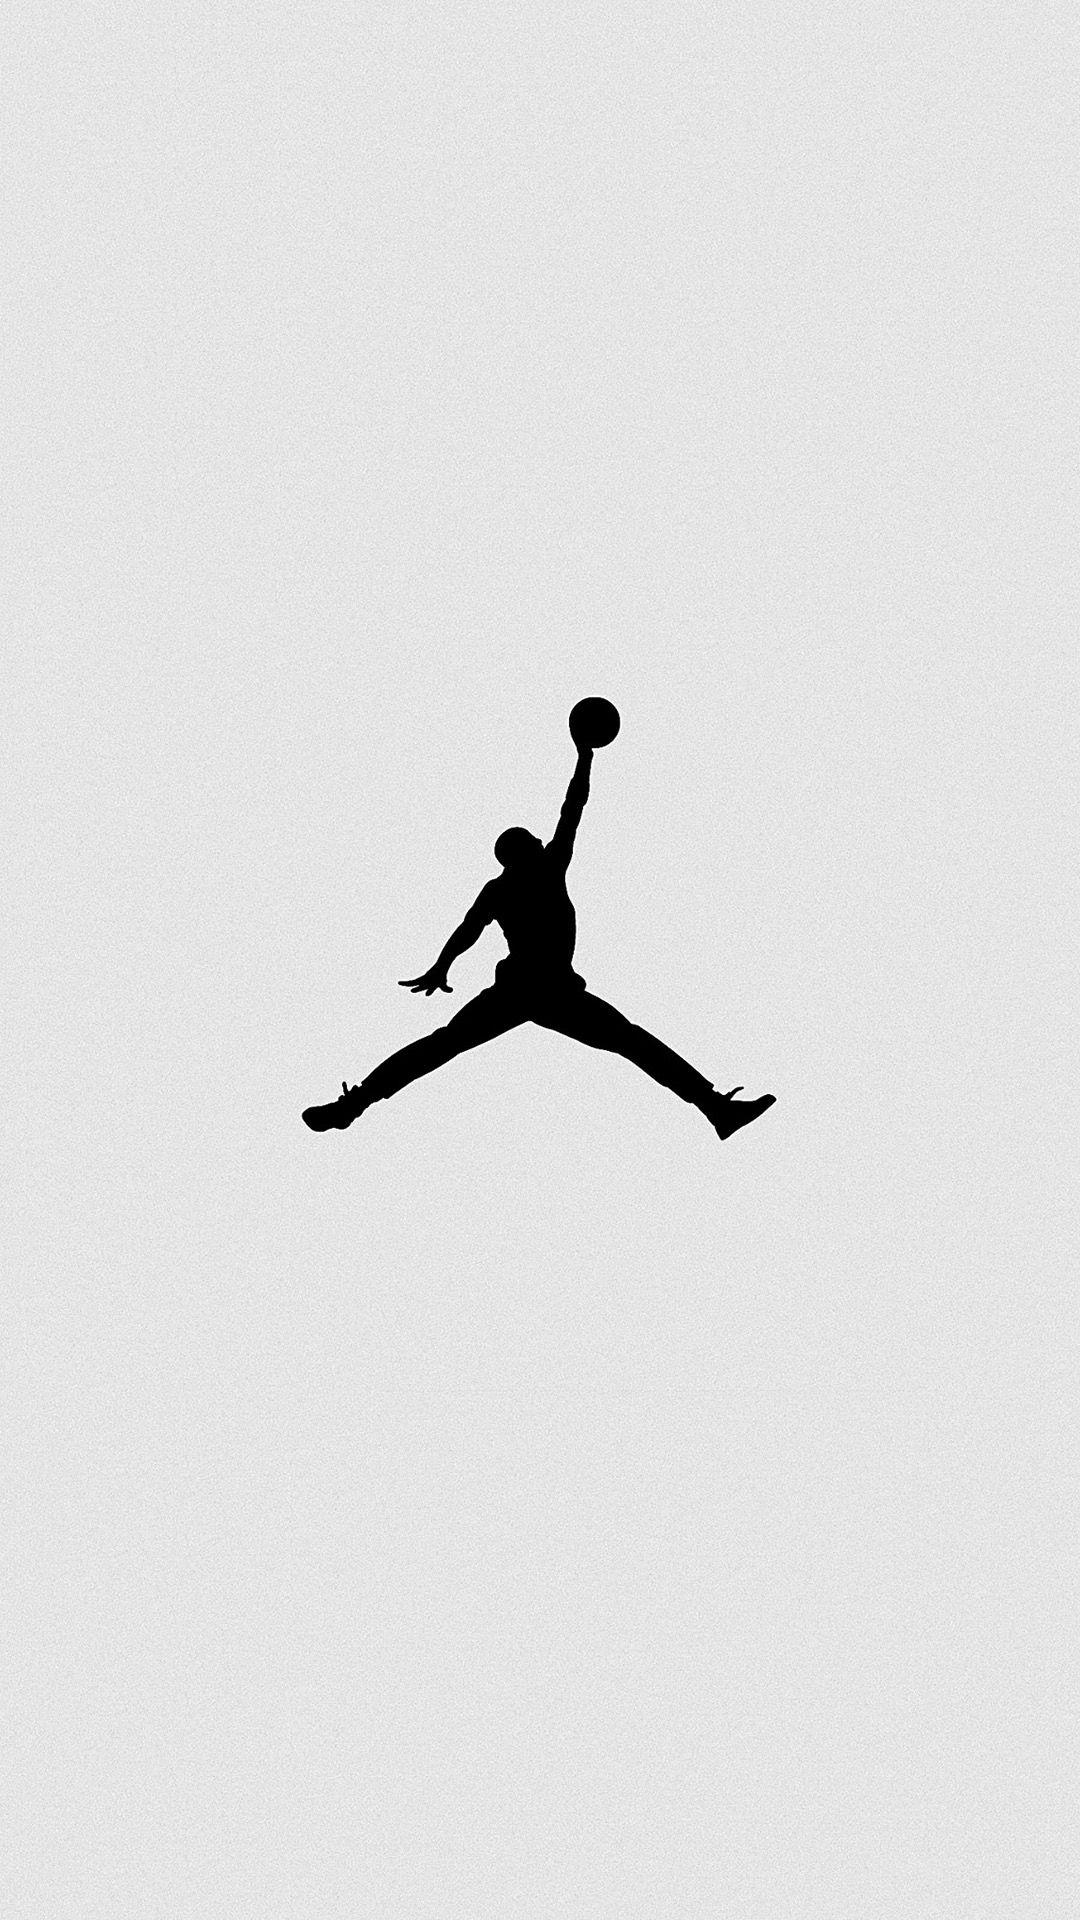 Nike Air Jordan Tumblr Wallpapers - Wallpaper Cave